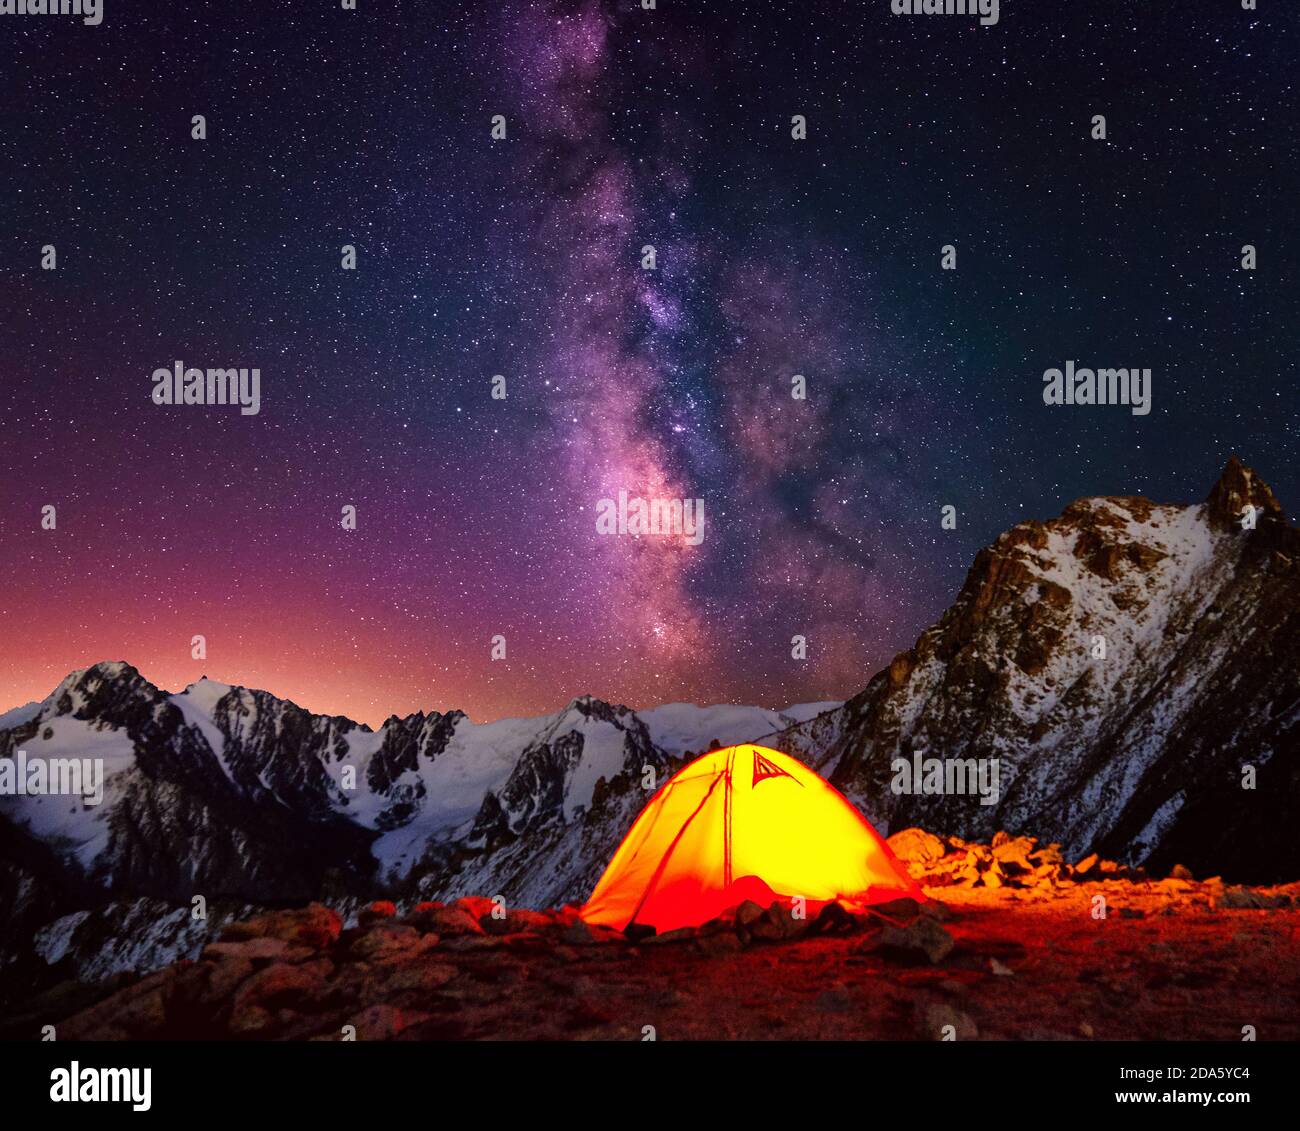 Camping im Hochland unter dem Nachthimmel mit Sternen; leuchtend oranges  Zelt in den Bergen auf dem Hintergrund der majestätischen Milchstraße  Stockfotografie - Alamy